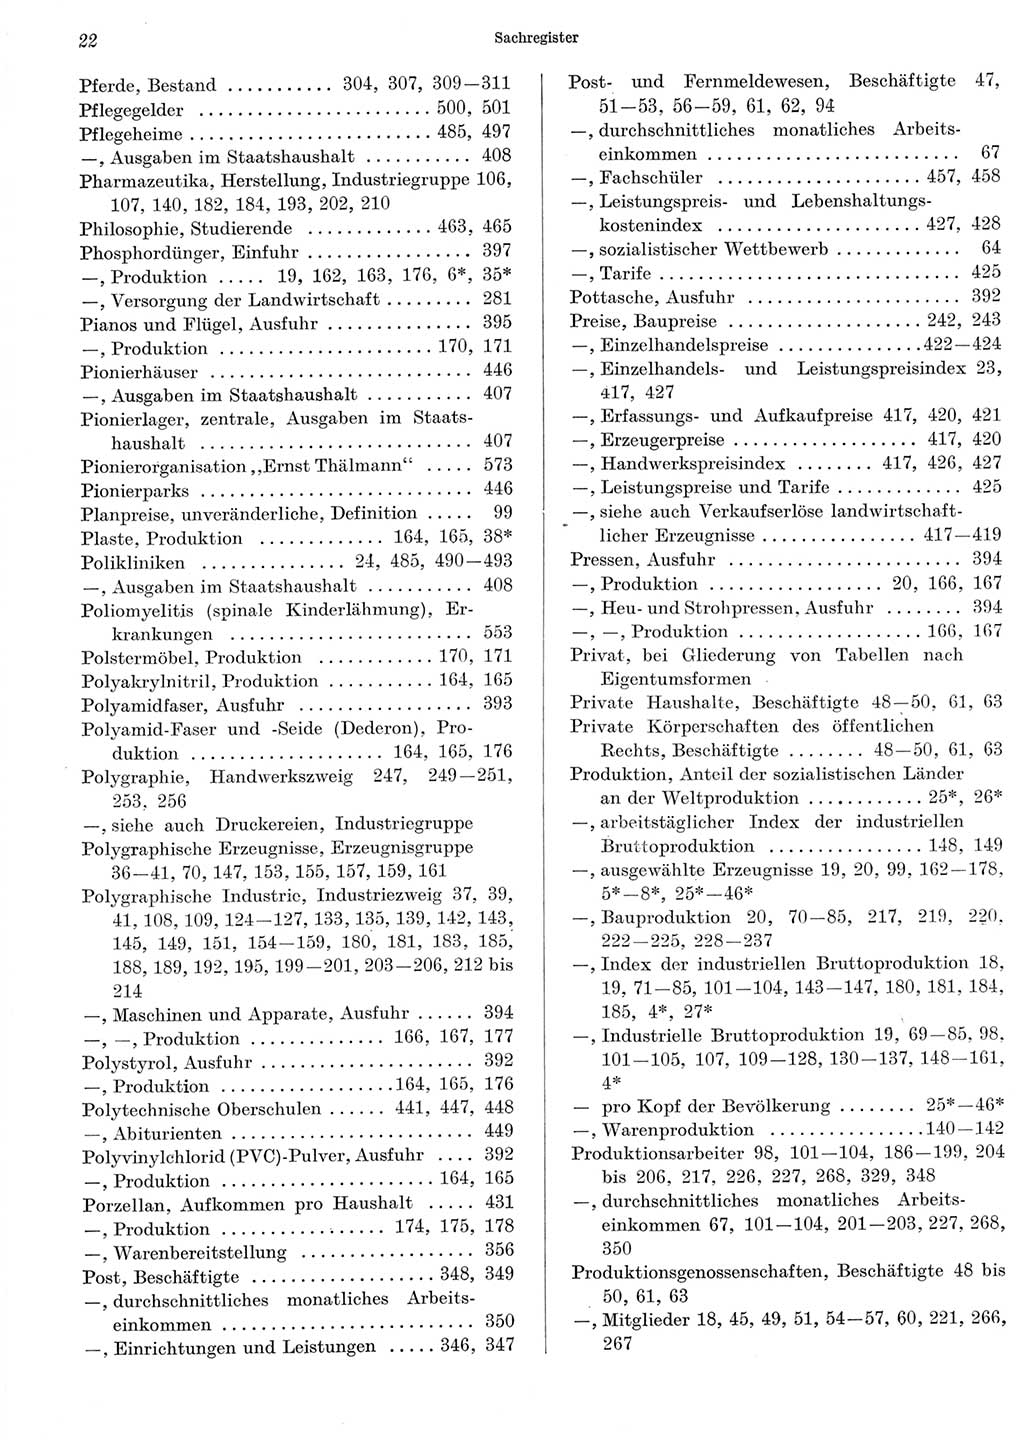 Statistisches Jahrbuch der Deutschen Demokratischen Republik (DDR) 1965, Seite 22 (Stat. Jb. DDR 1965, S. 22)